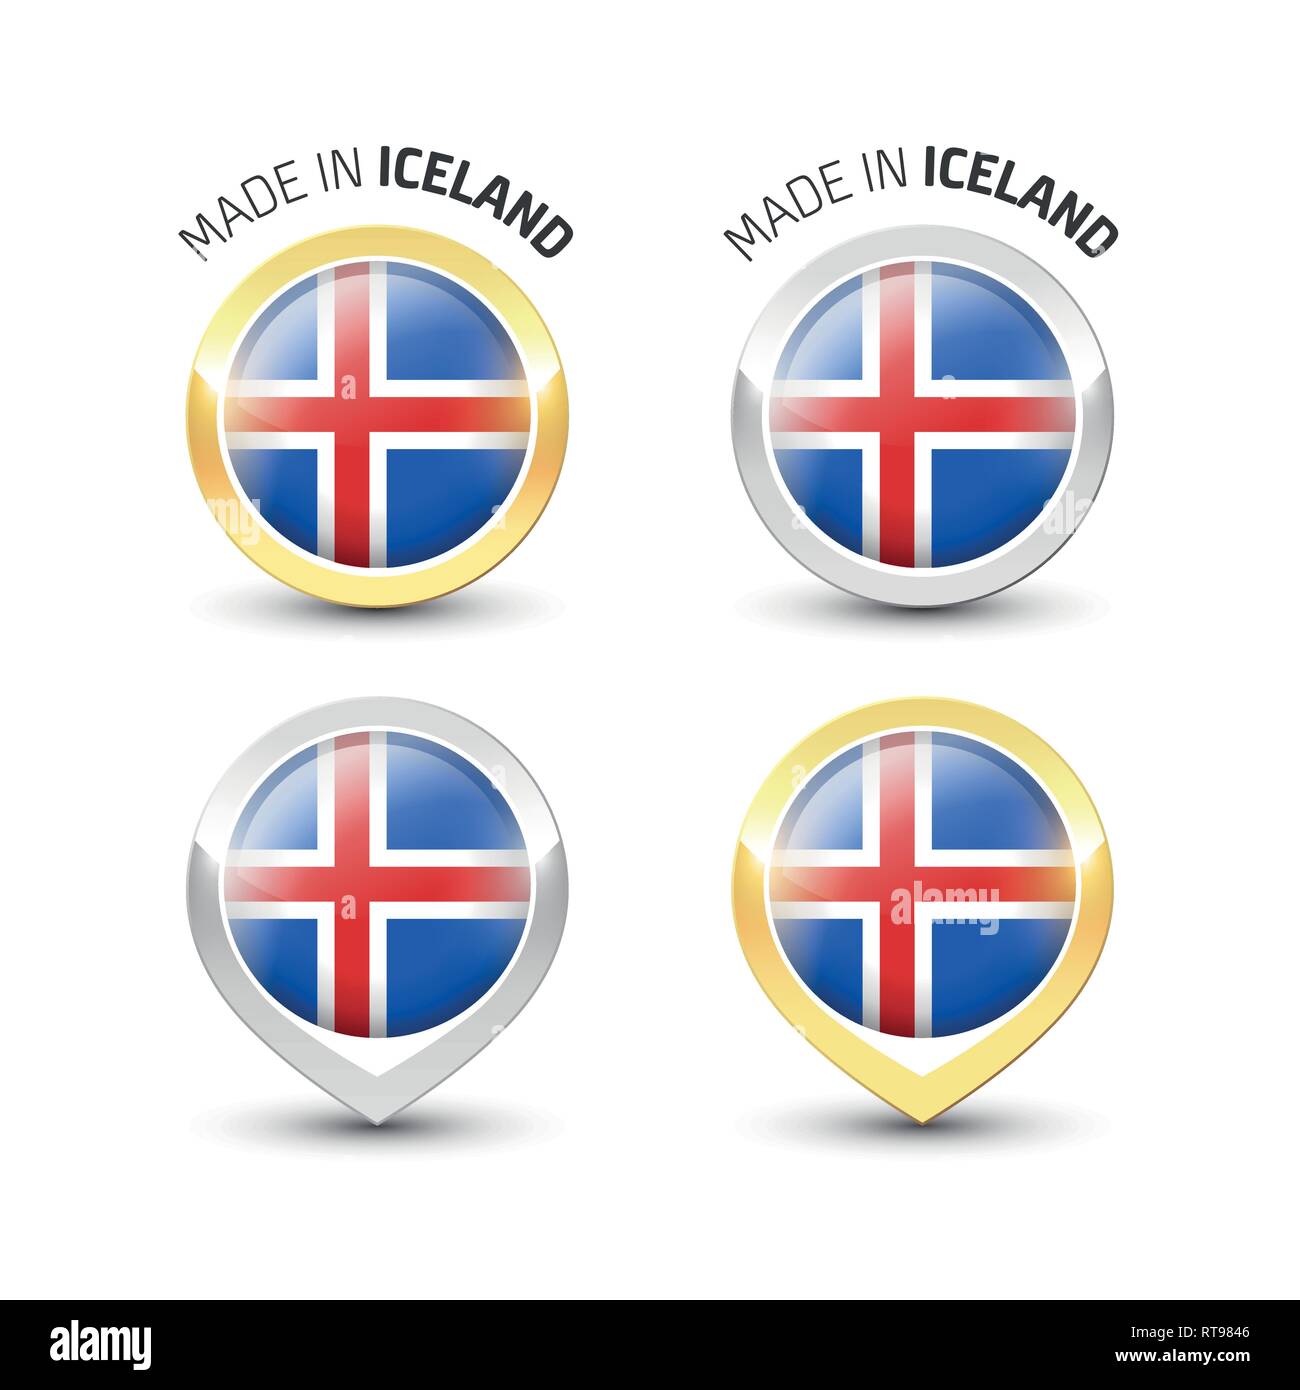 Realizzati in Islanda - etichetta di garanzia con la bandiera islandese all'interno del turno oro e argento icone. Illustrazione Vettoriale